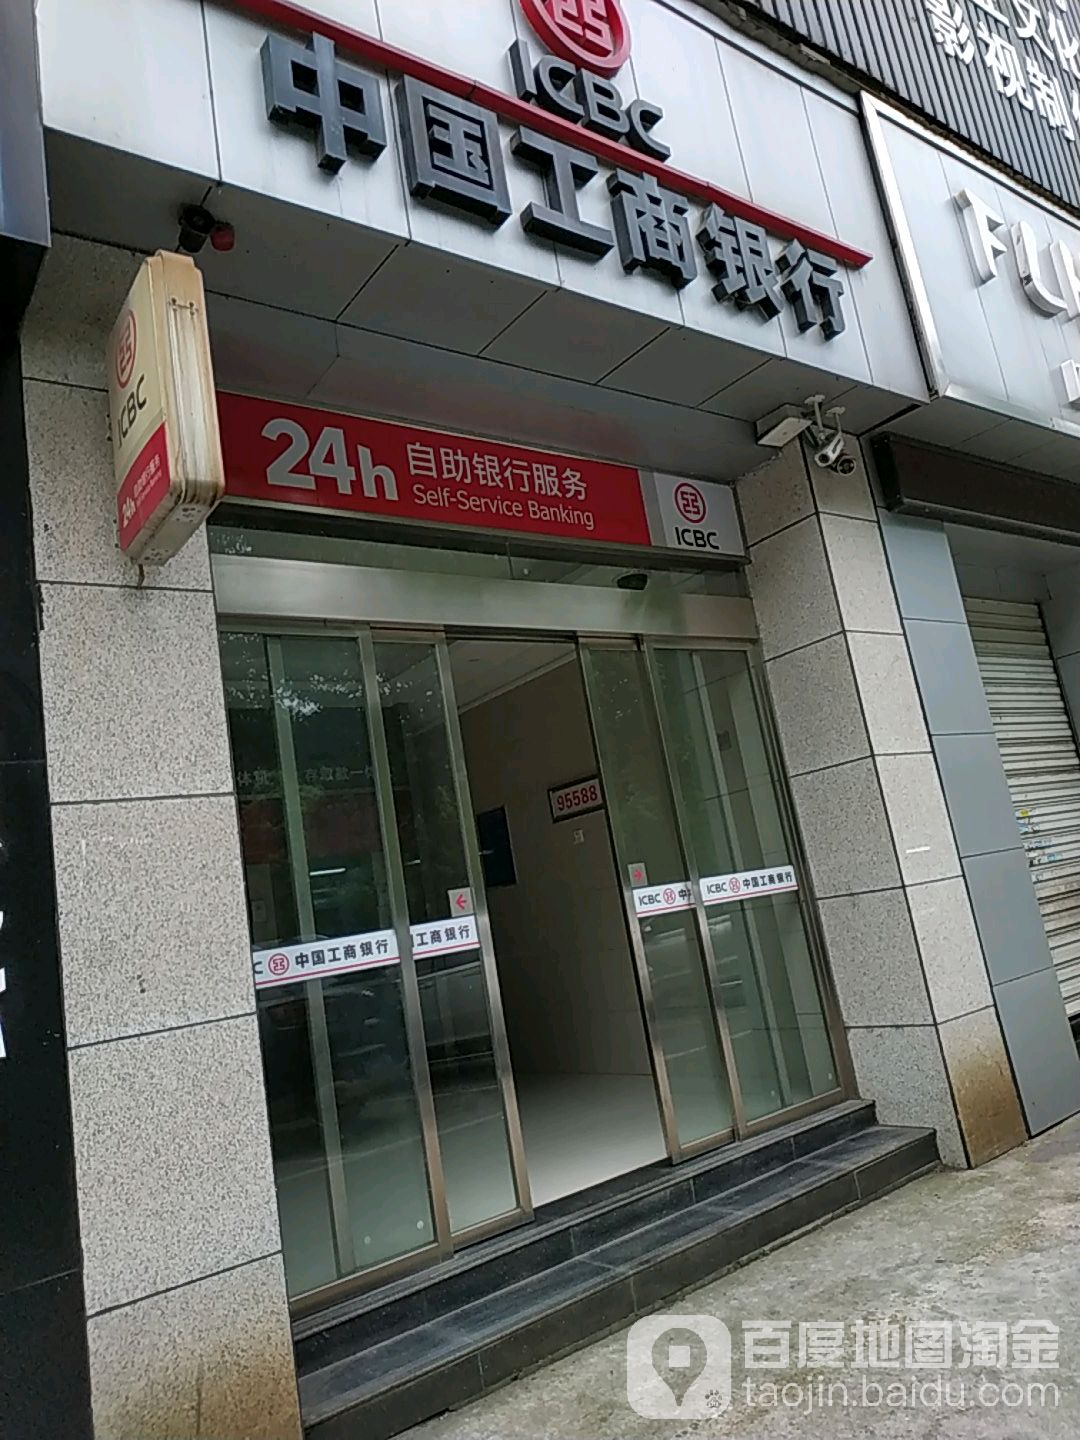 中國工商銀行24小時自助銀行(建湘路)